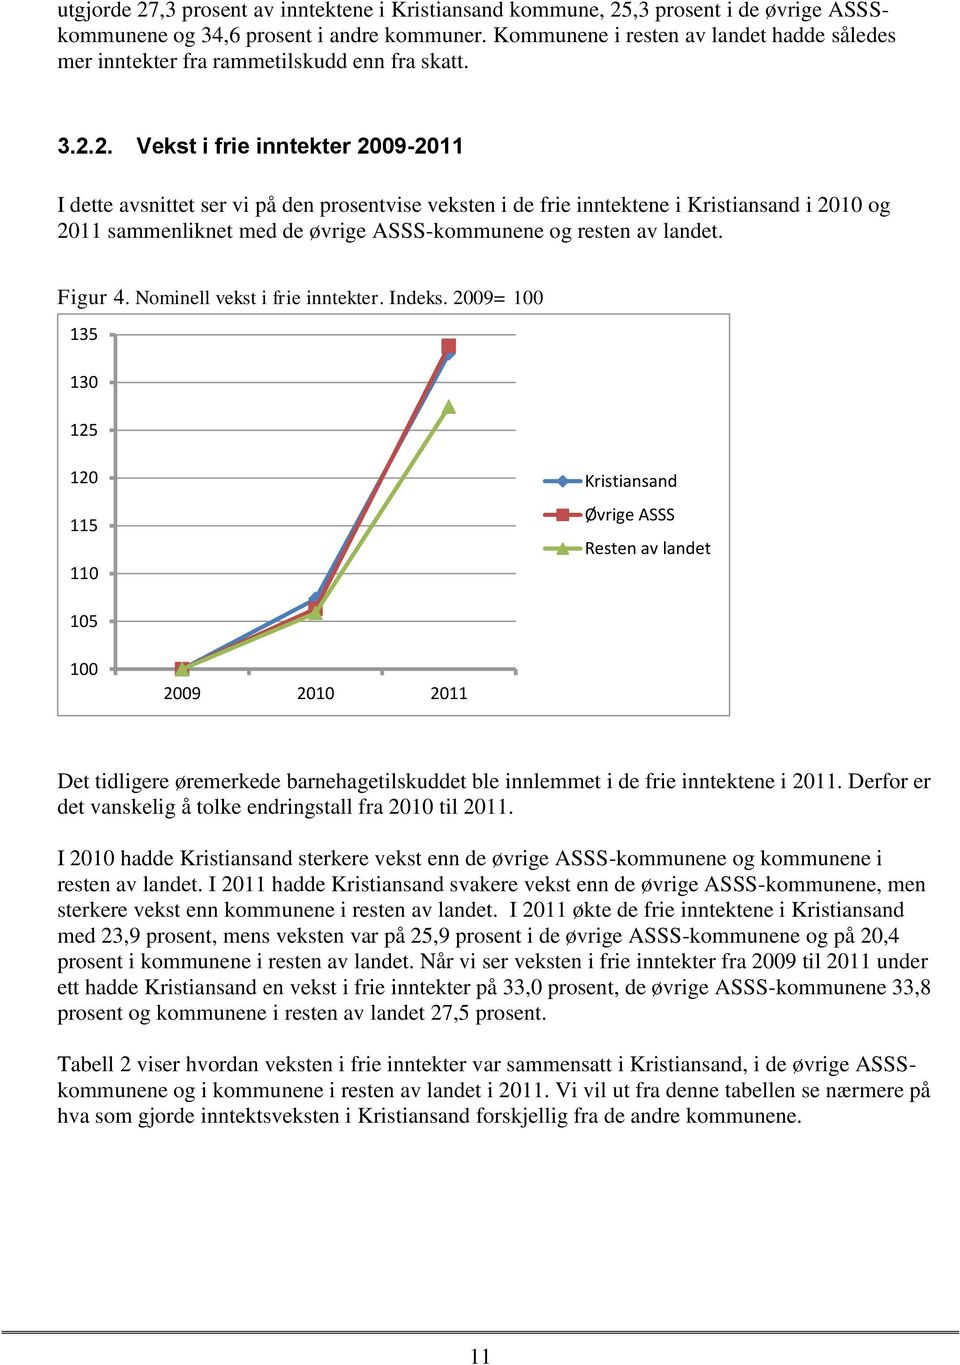 2. Vekst i frie inntekter 2009-2011 I dette avsnittet ser vi på den prosentvise veksten i de frie inntektene i Kristiansand i 2010 og 2011 sammenliknet med de øvrige ASSS-kommunene og resten av